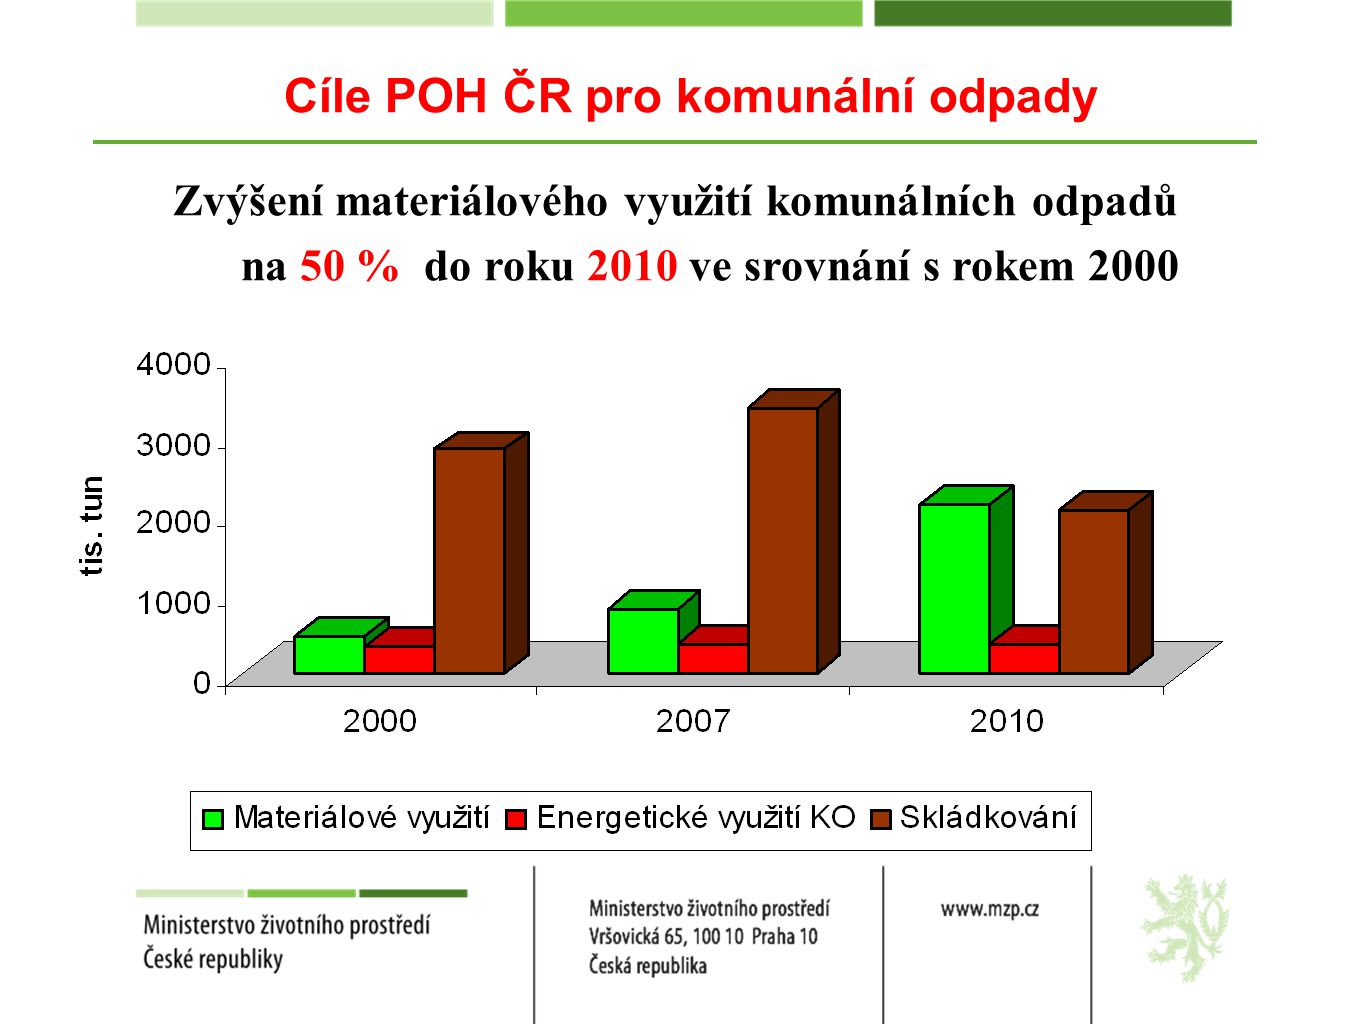 Zvýšení materiálového využití komunálních odpadů na 50 % do roku 2010 ve srovnání s rokem 2000 Cíle POH ČR pro komunální odpady